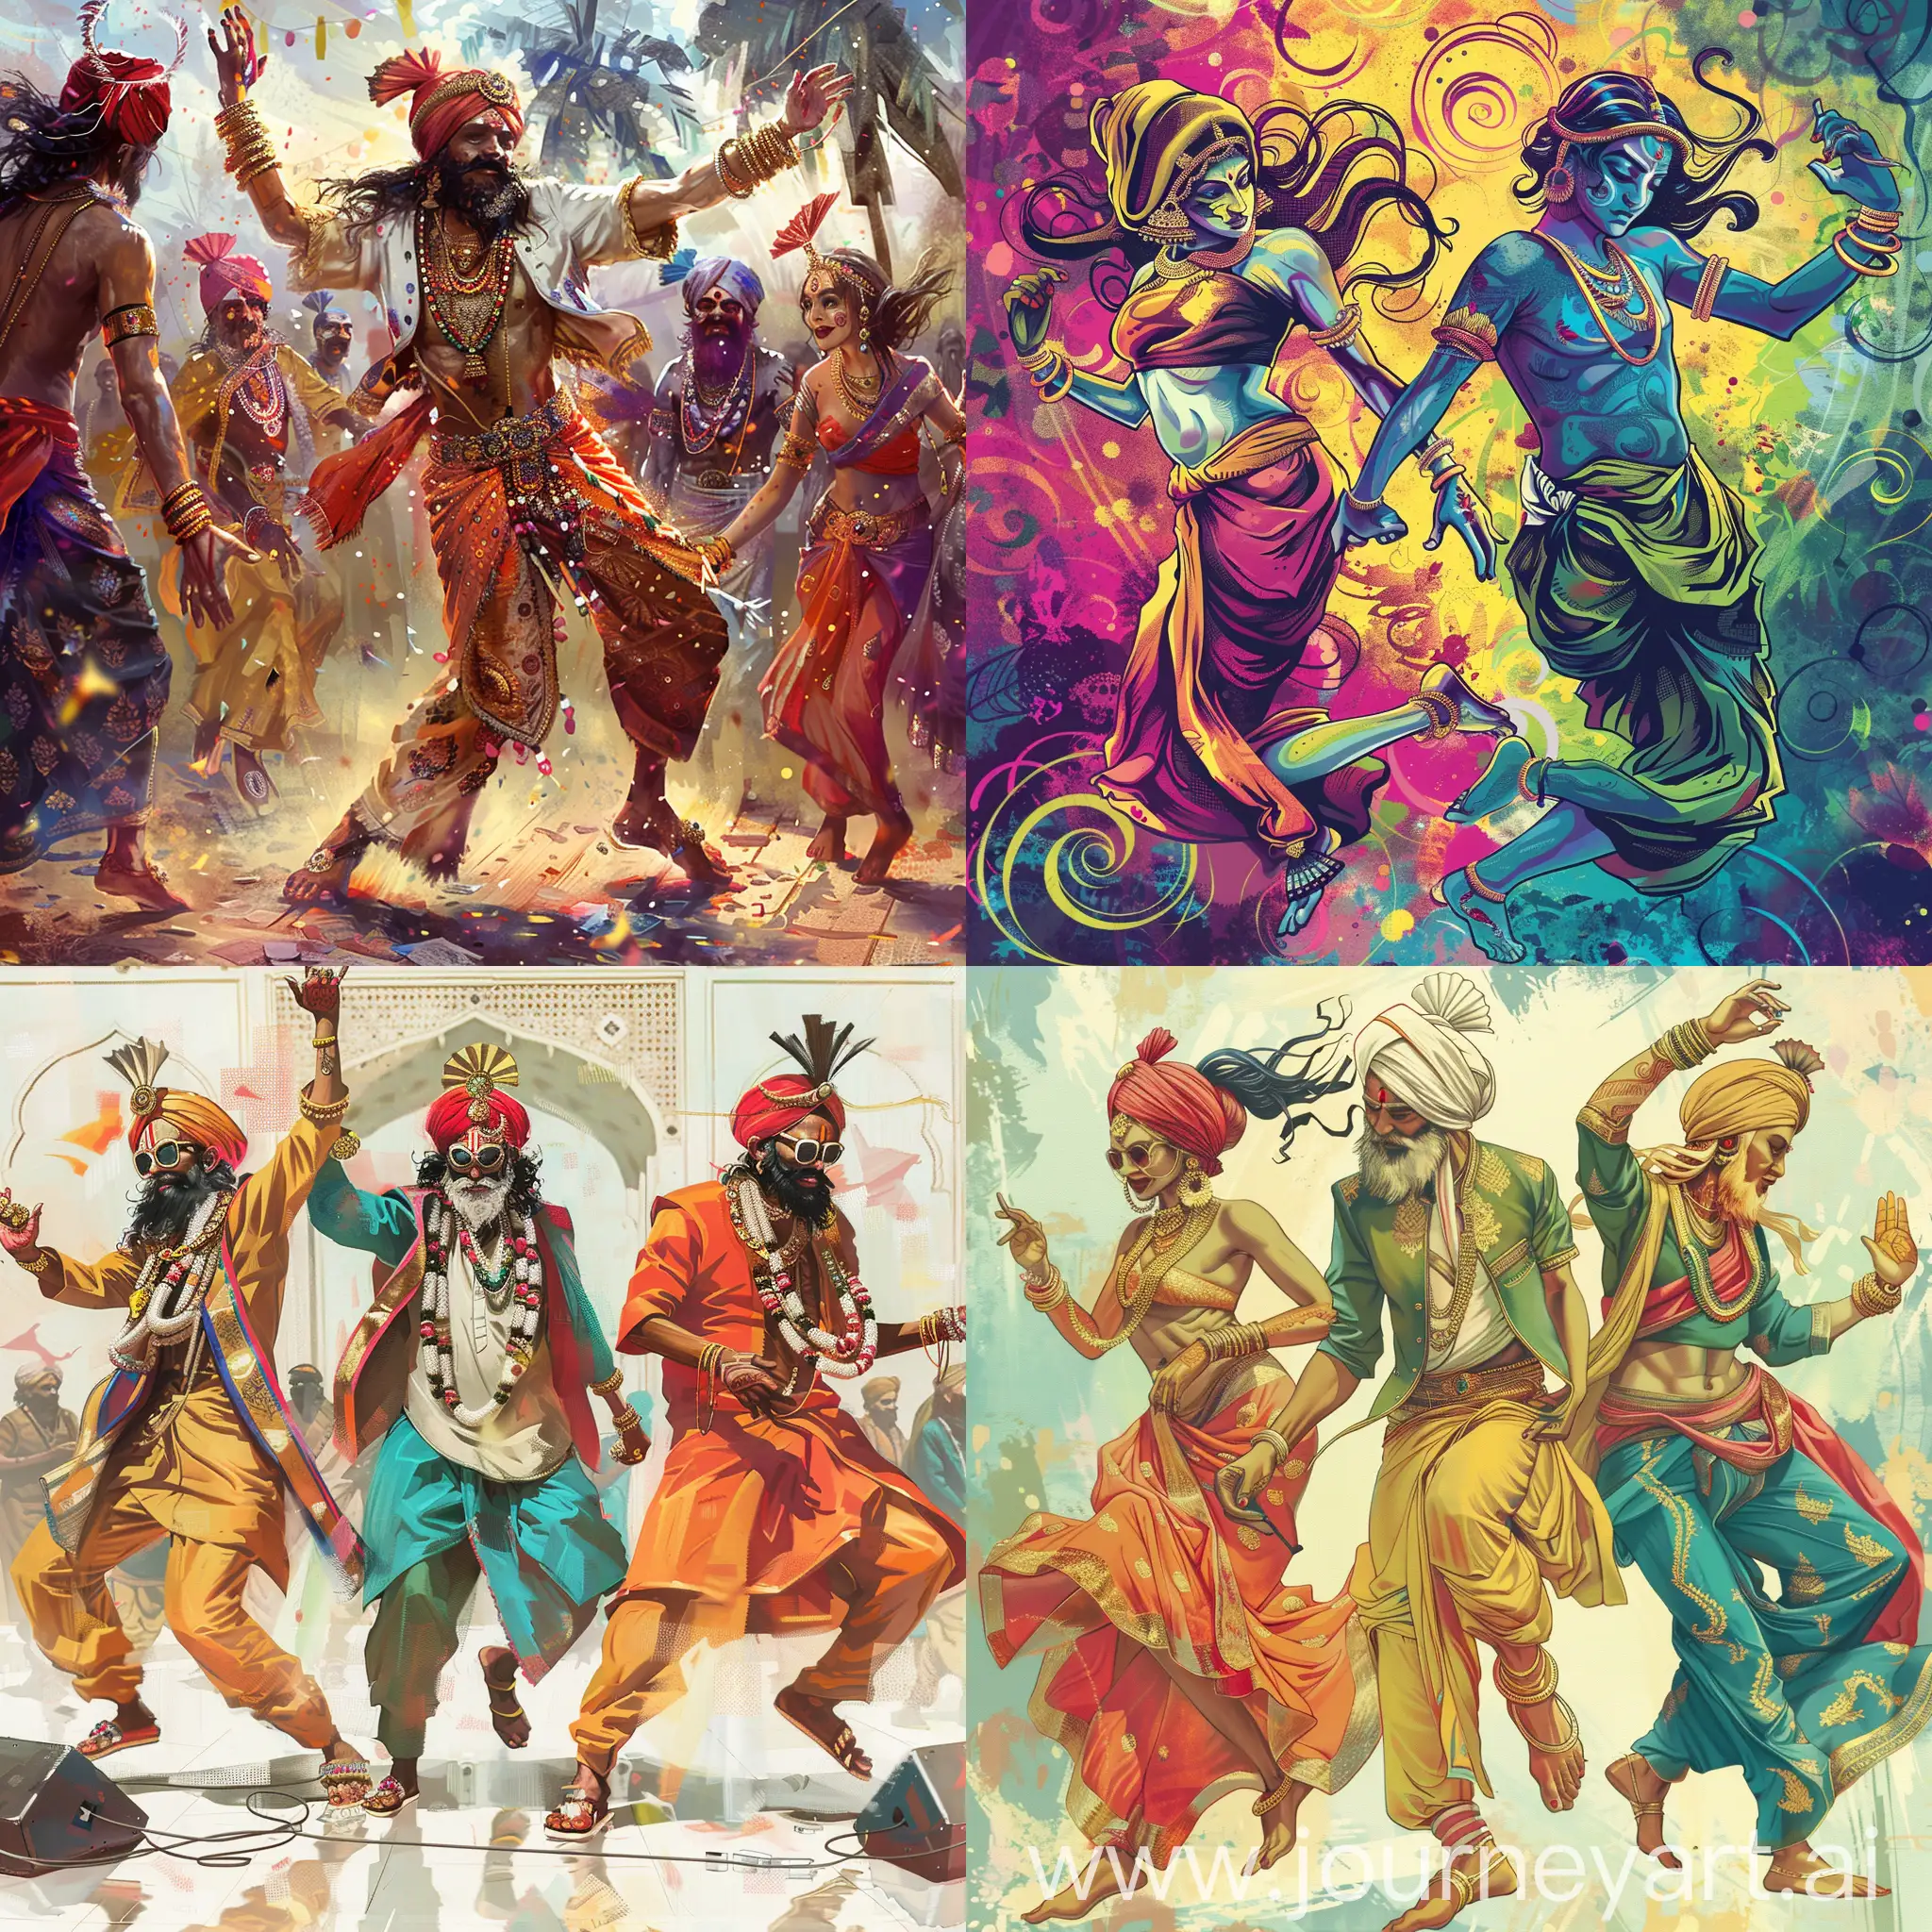 Обложка для трека, трек про индийских богов на дискотеке, индийские боги в модной одежде танцуют, deephouse music